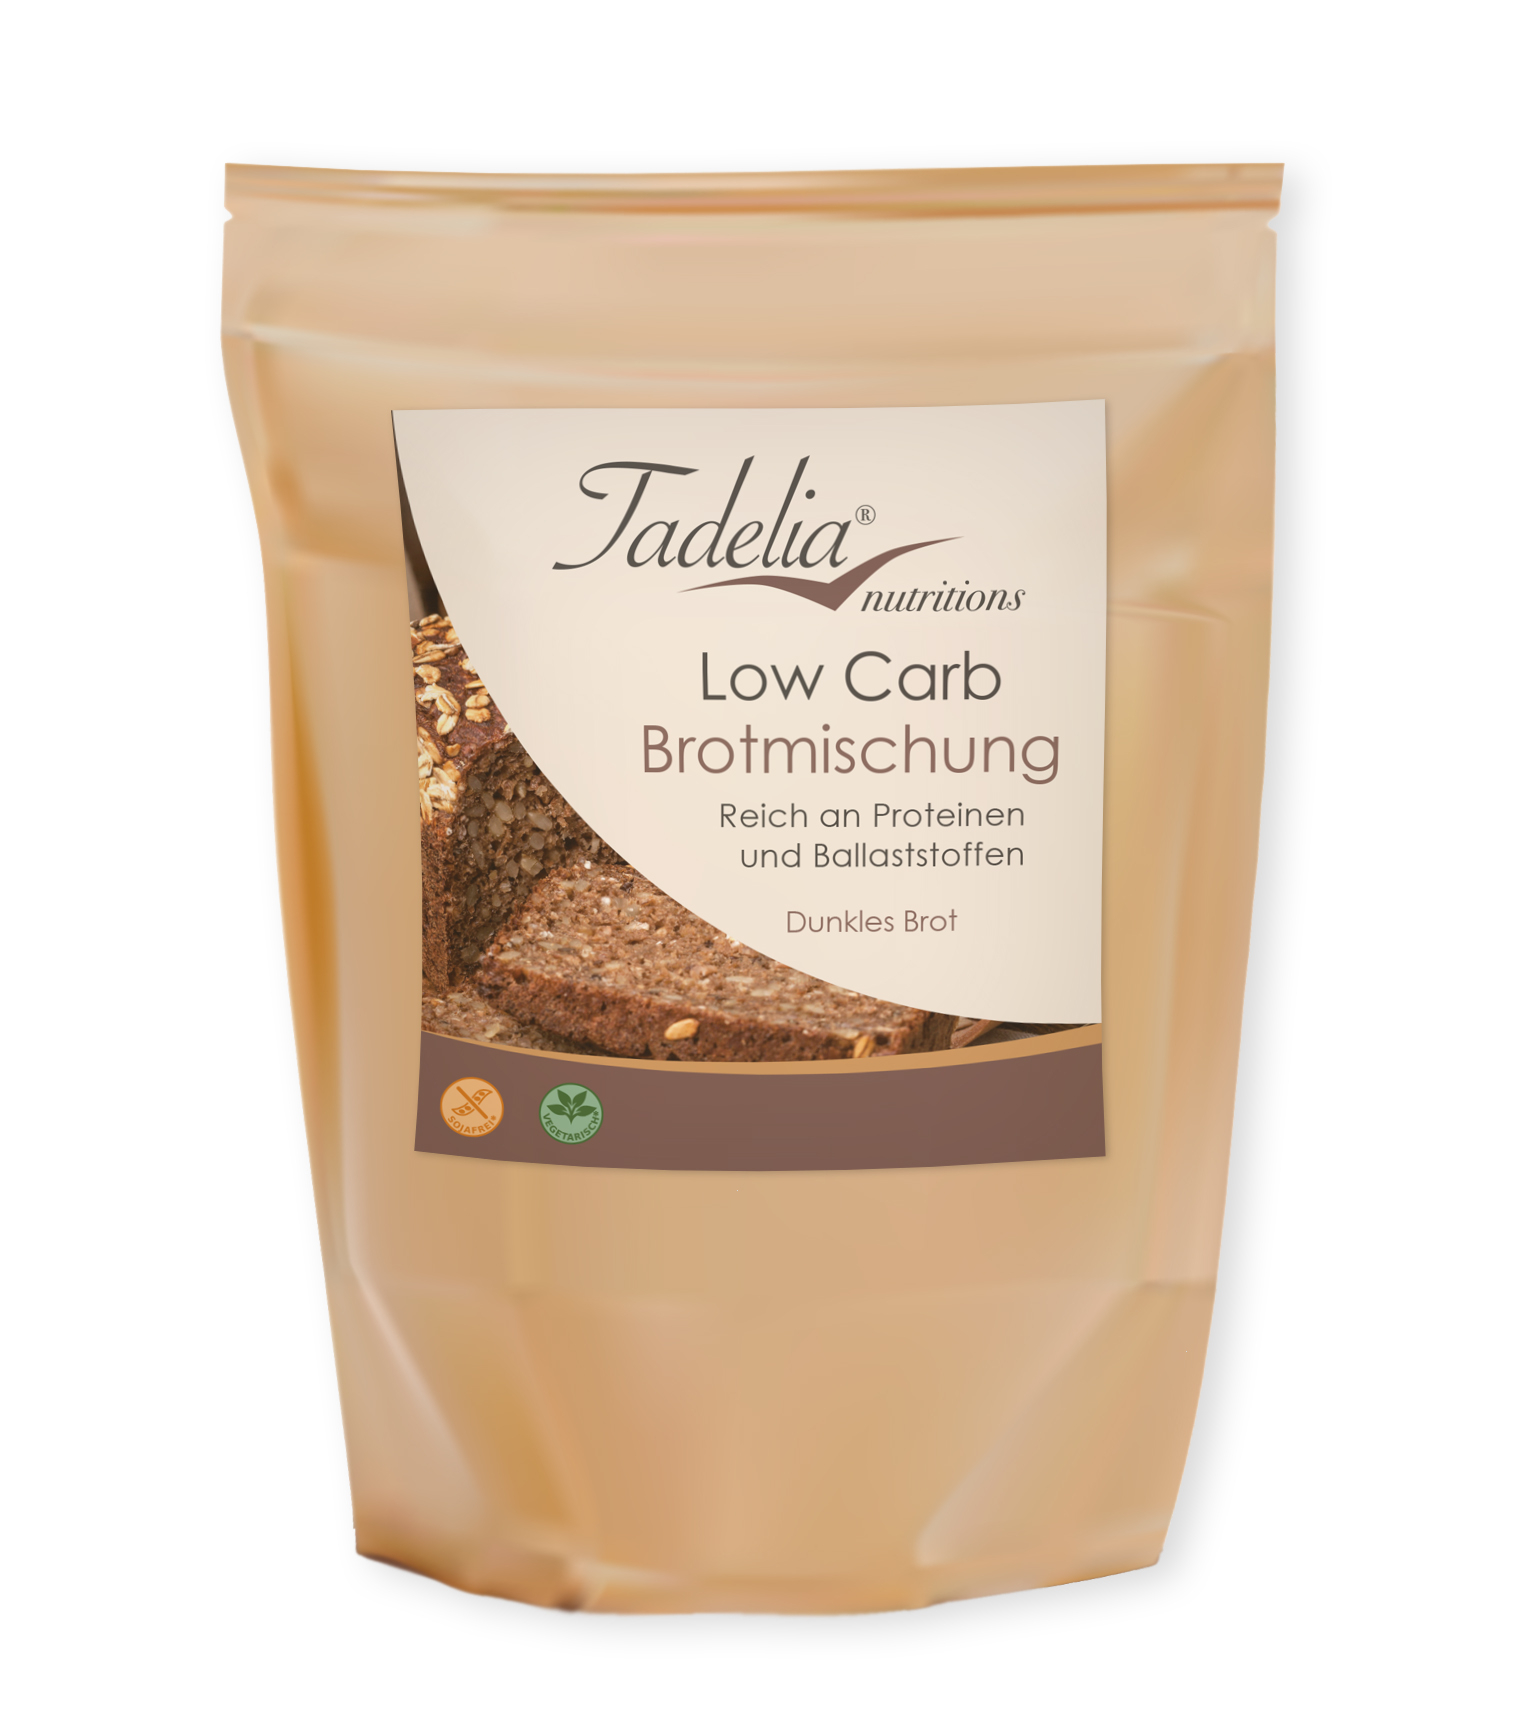 Tadelia® Low Carb dunkle Brotmischung reich an Proteinen und Ballaststoffen 250 g | HCG Stoffwechselkur